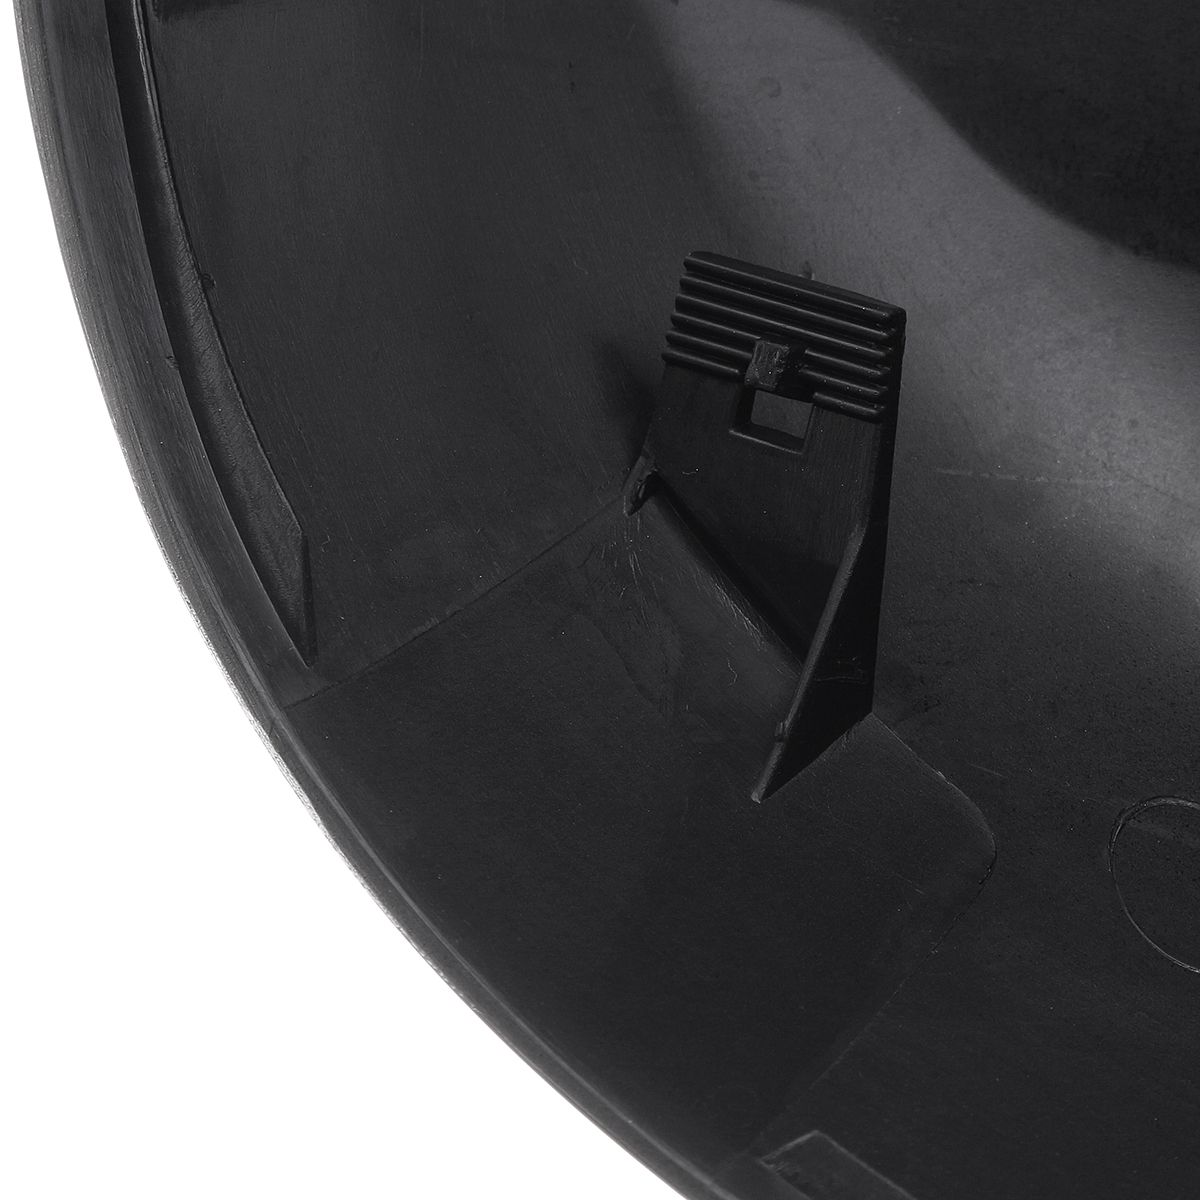 2Pcs-Gloss-Black-Side-Rearview-Mirror-Covers-Caps-For-BMW-5-6-7-Series-F10-F18-F11-F06-F07-F12-F13-F-1662874